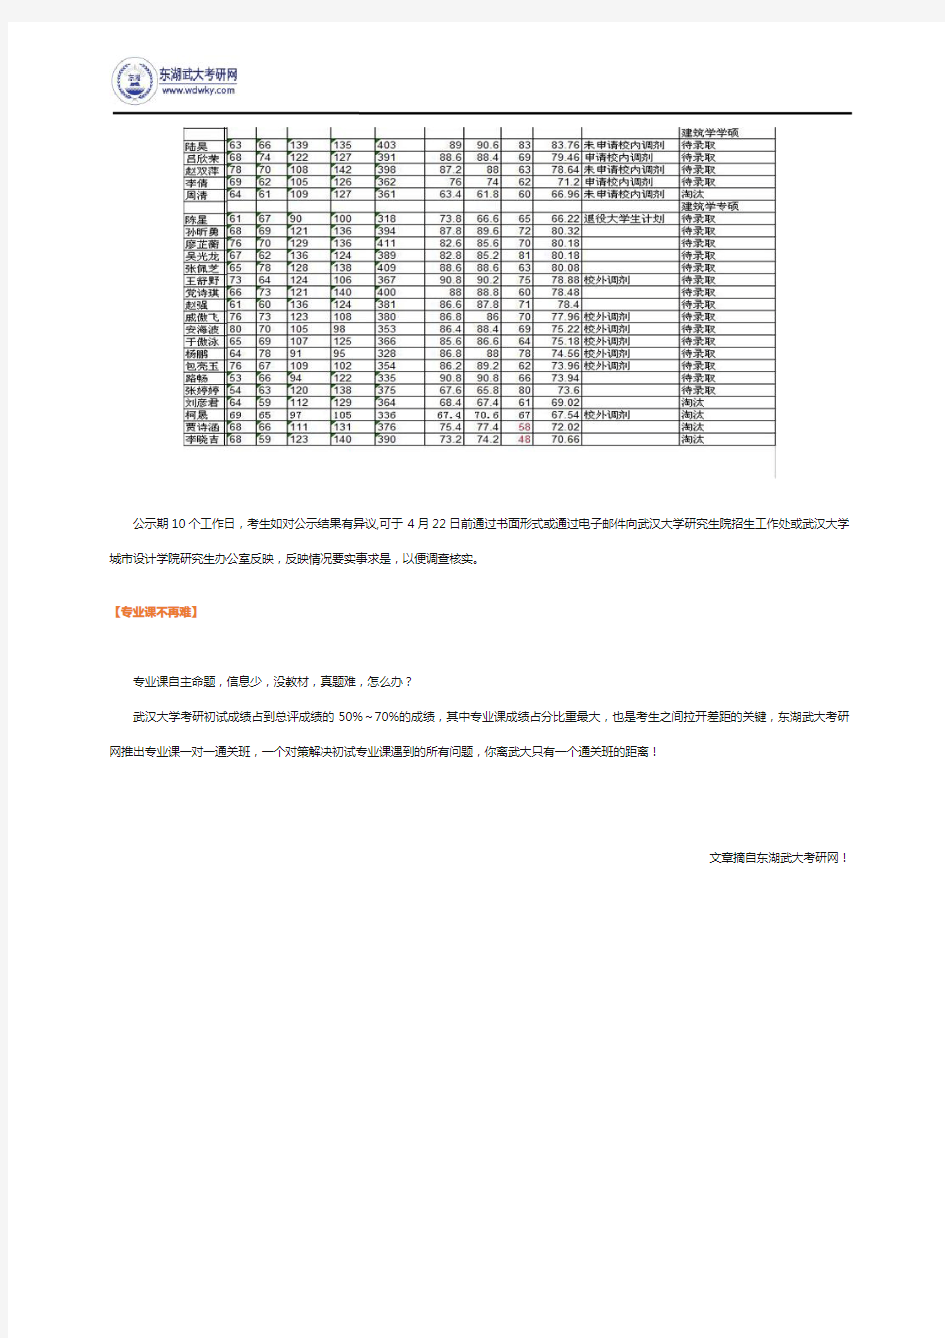 2016年武汉大学城市设计学院硕士招生拟录取名单公示